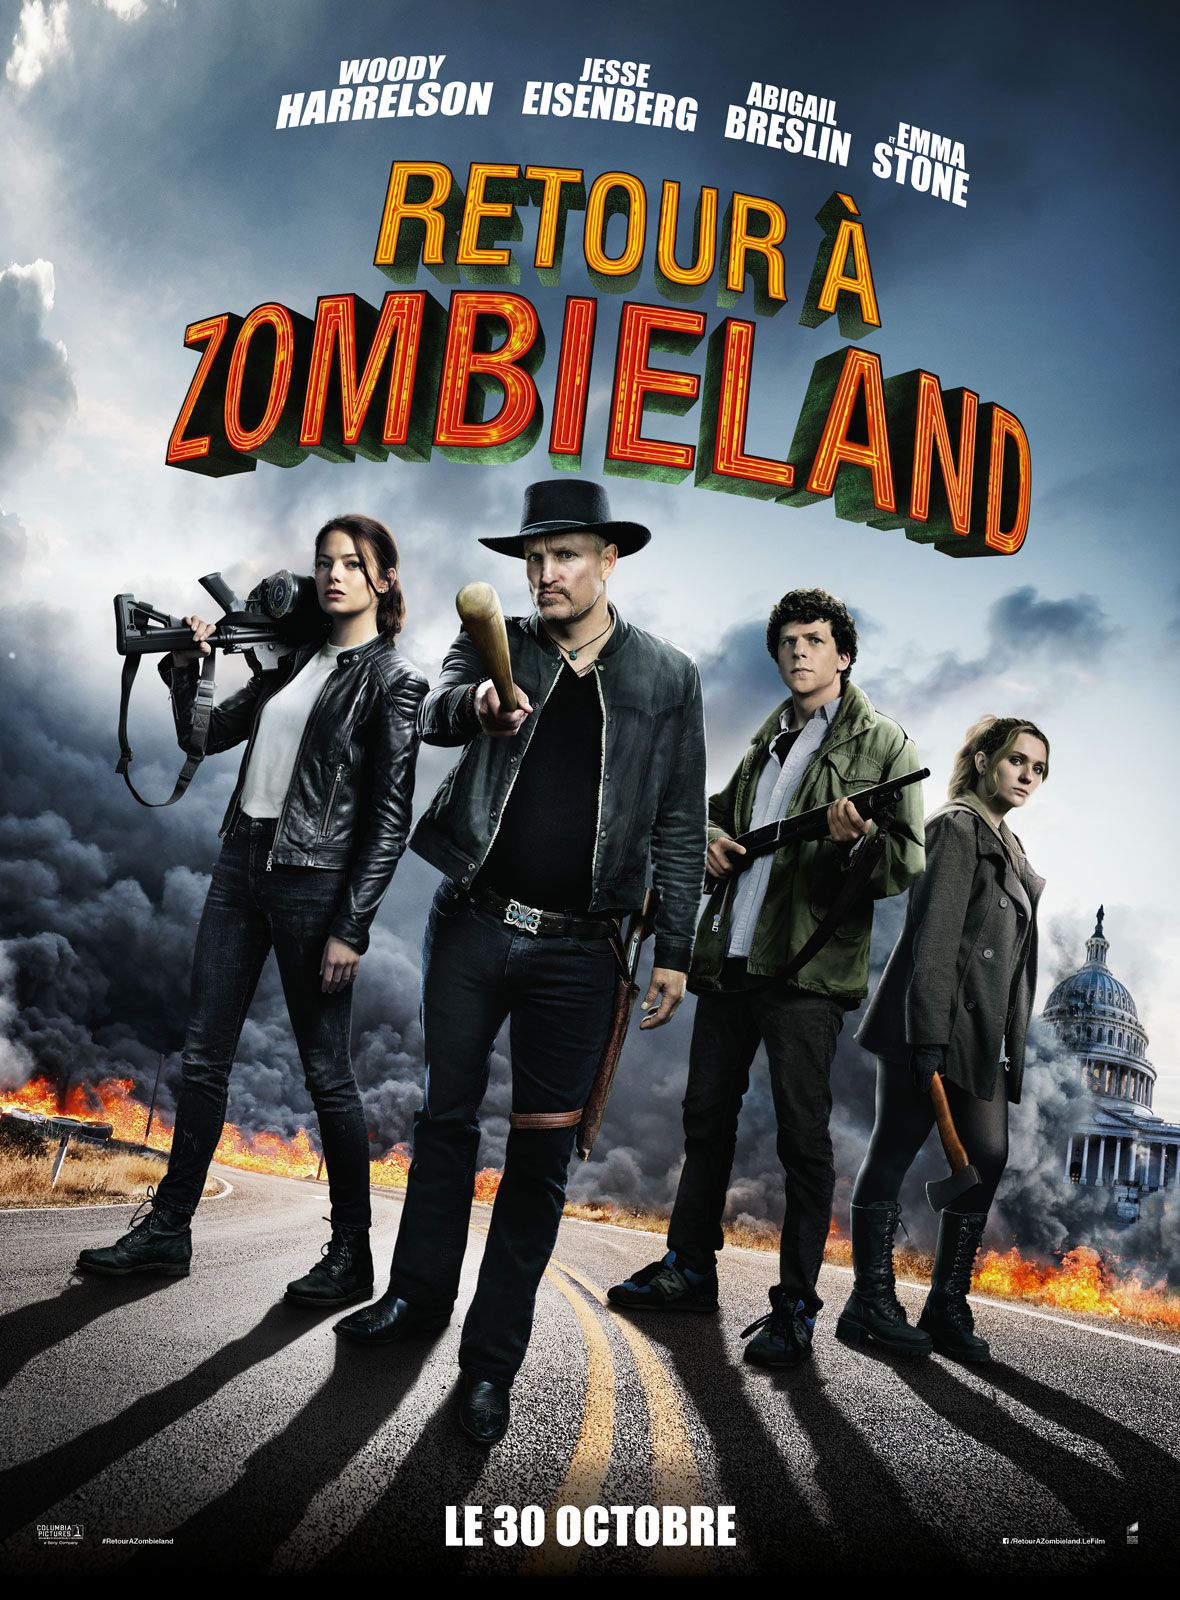 Retour à Zombieland - Film (2019) streaming VF gratuit complet